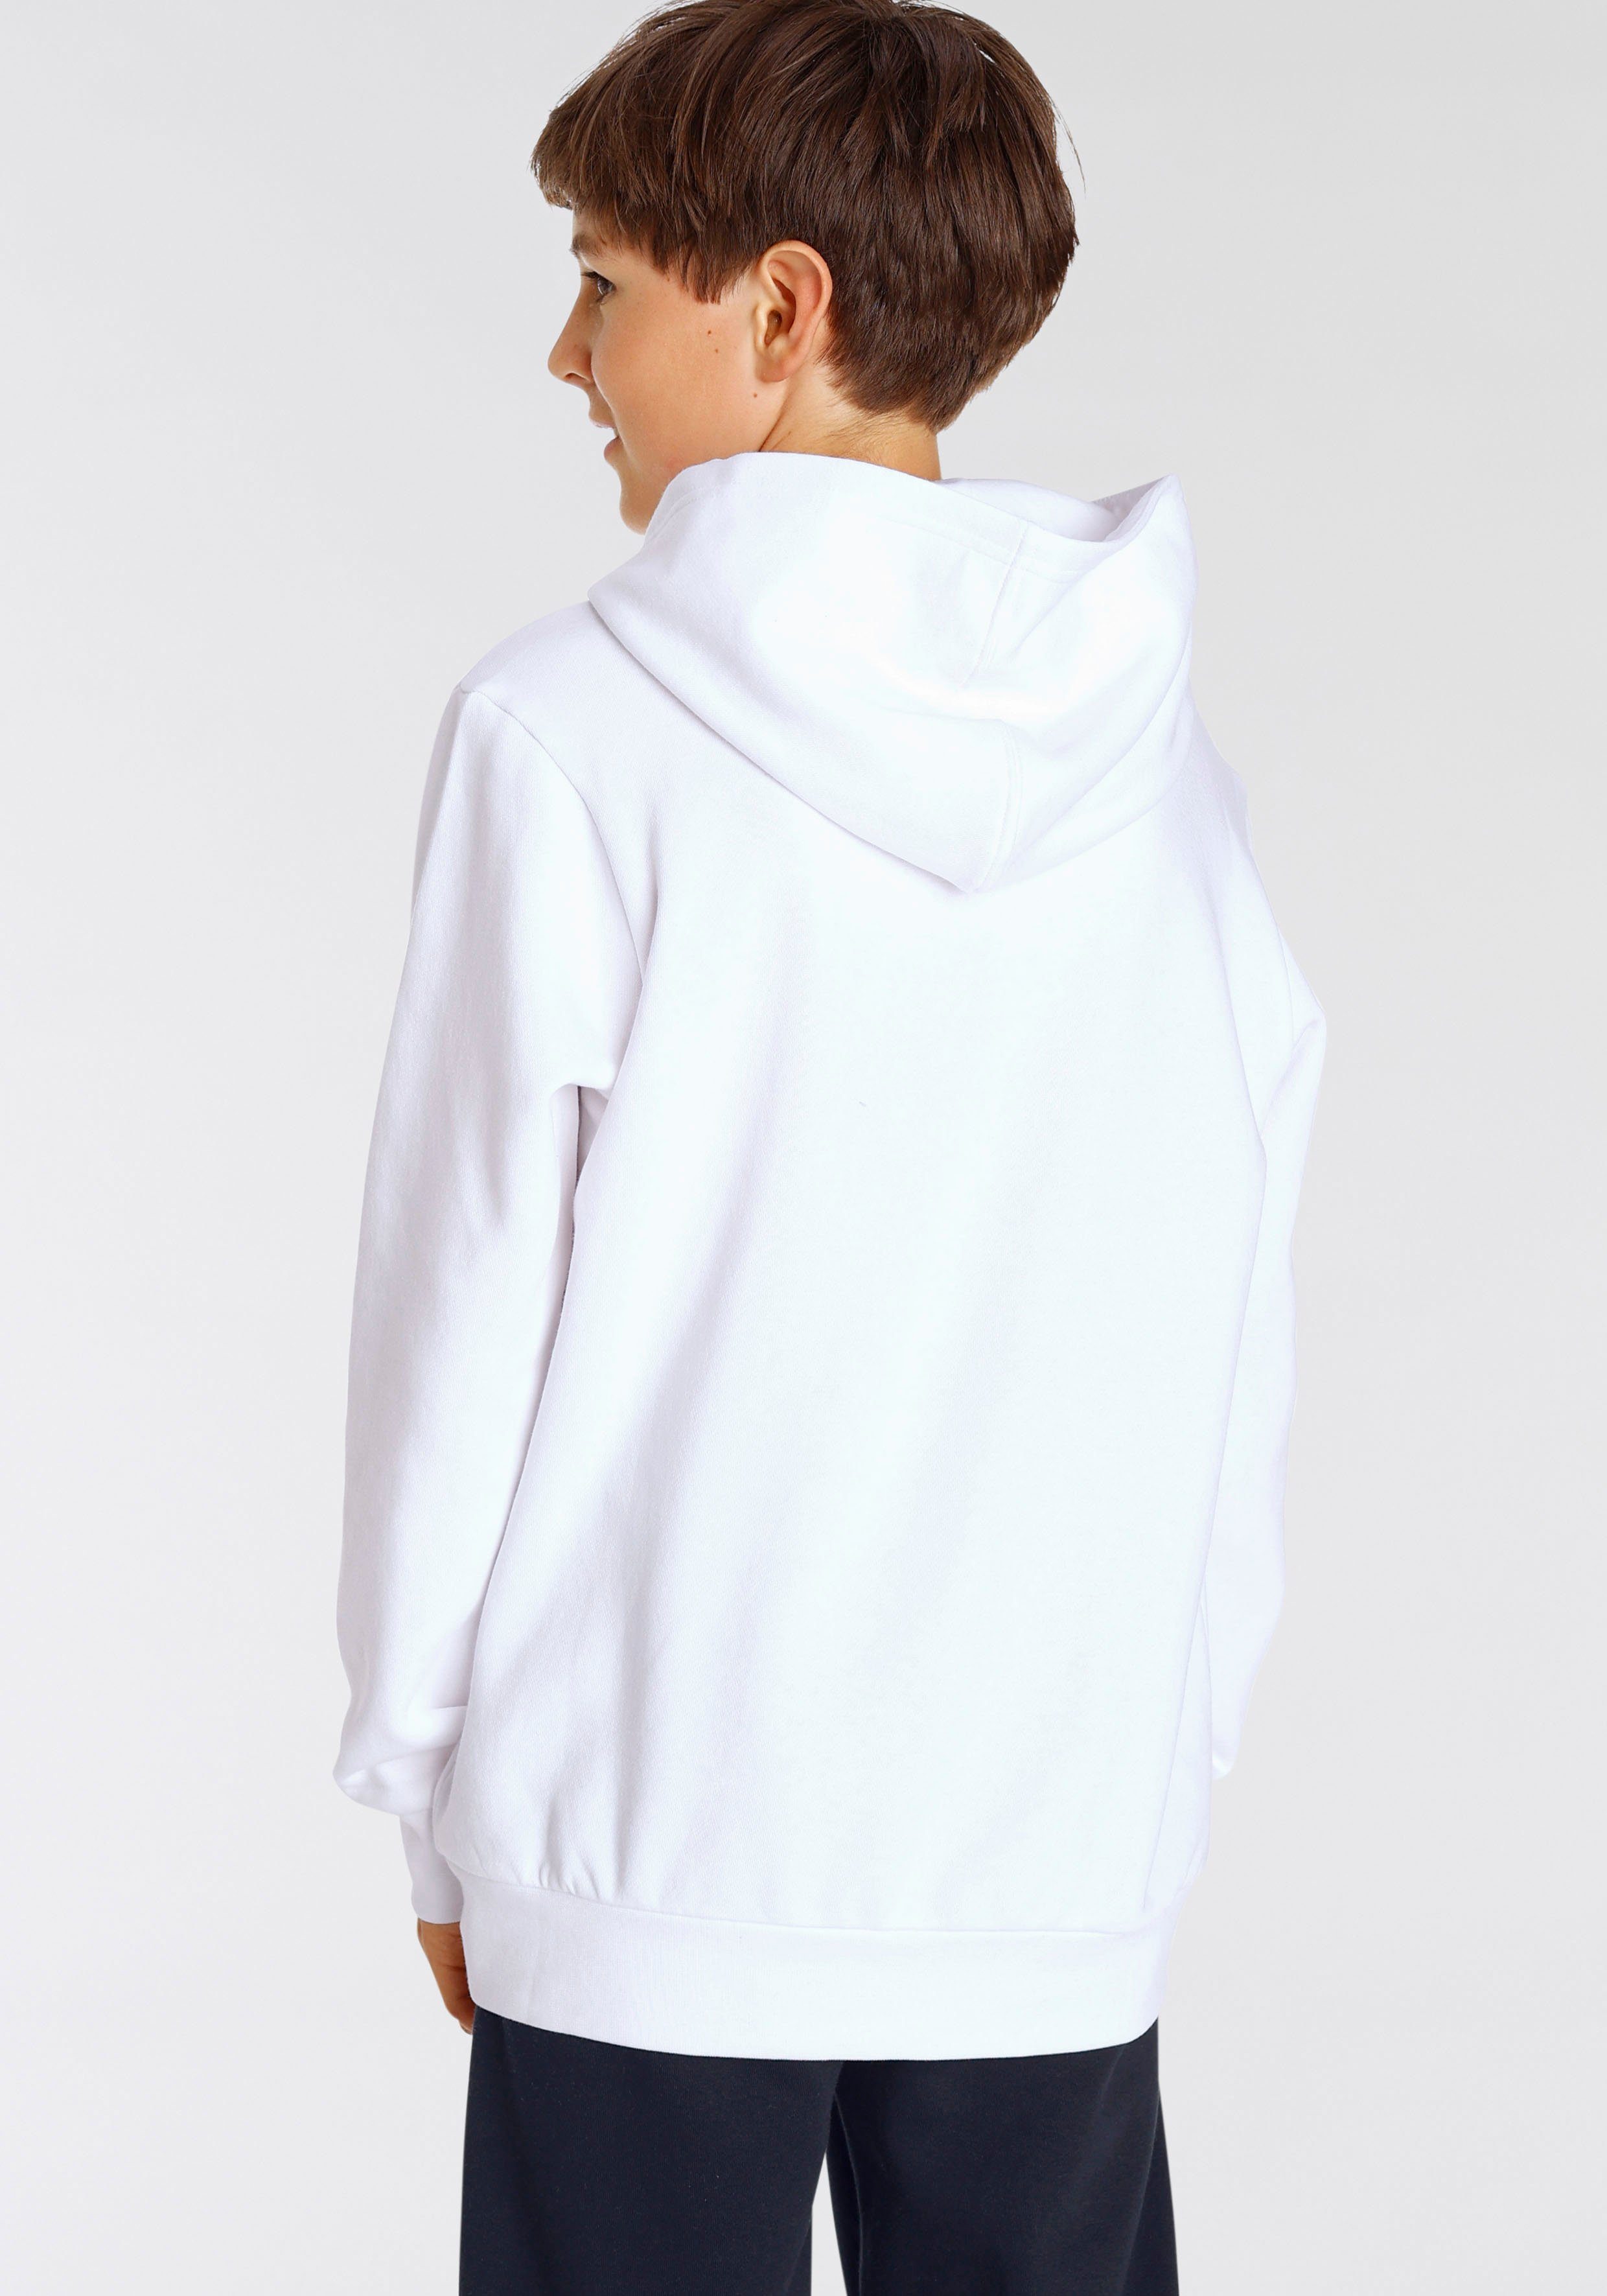 Sweatshirt Sweatshirt Kinder - Graphic Hooded weiß für Champion Shop